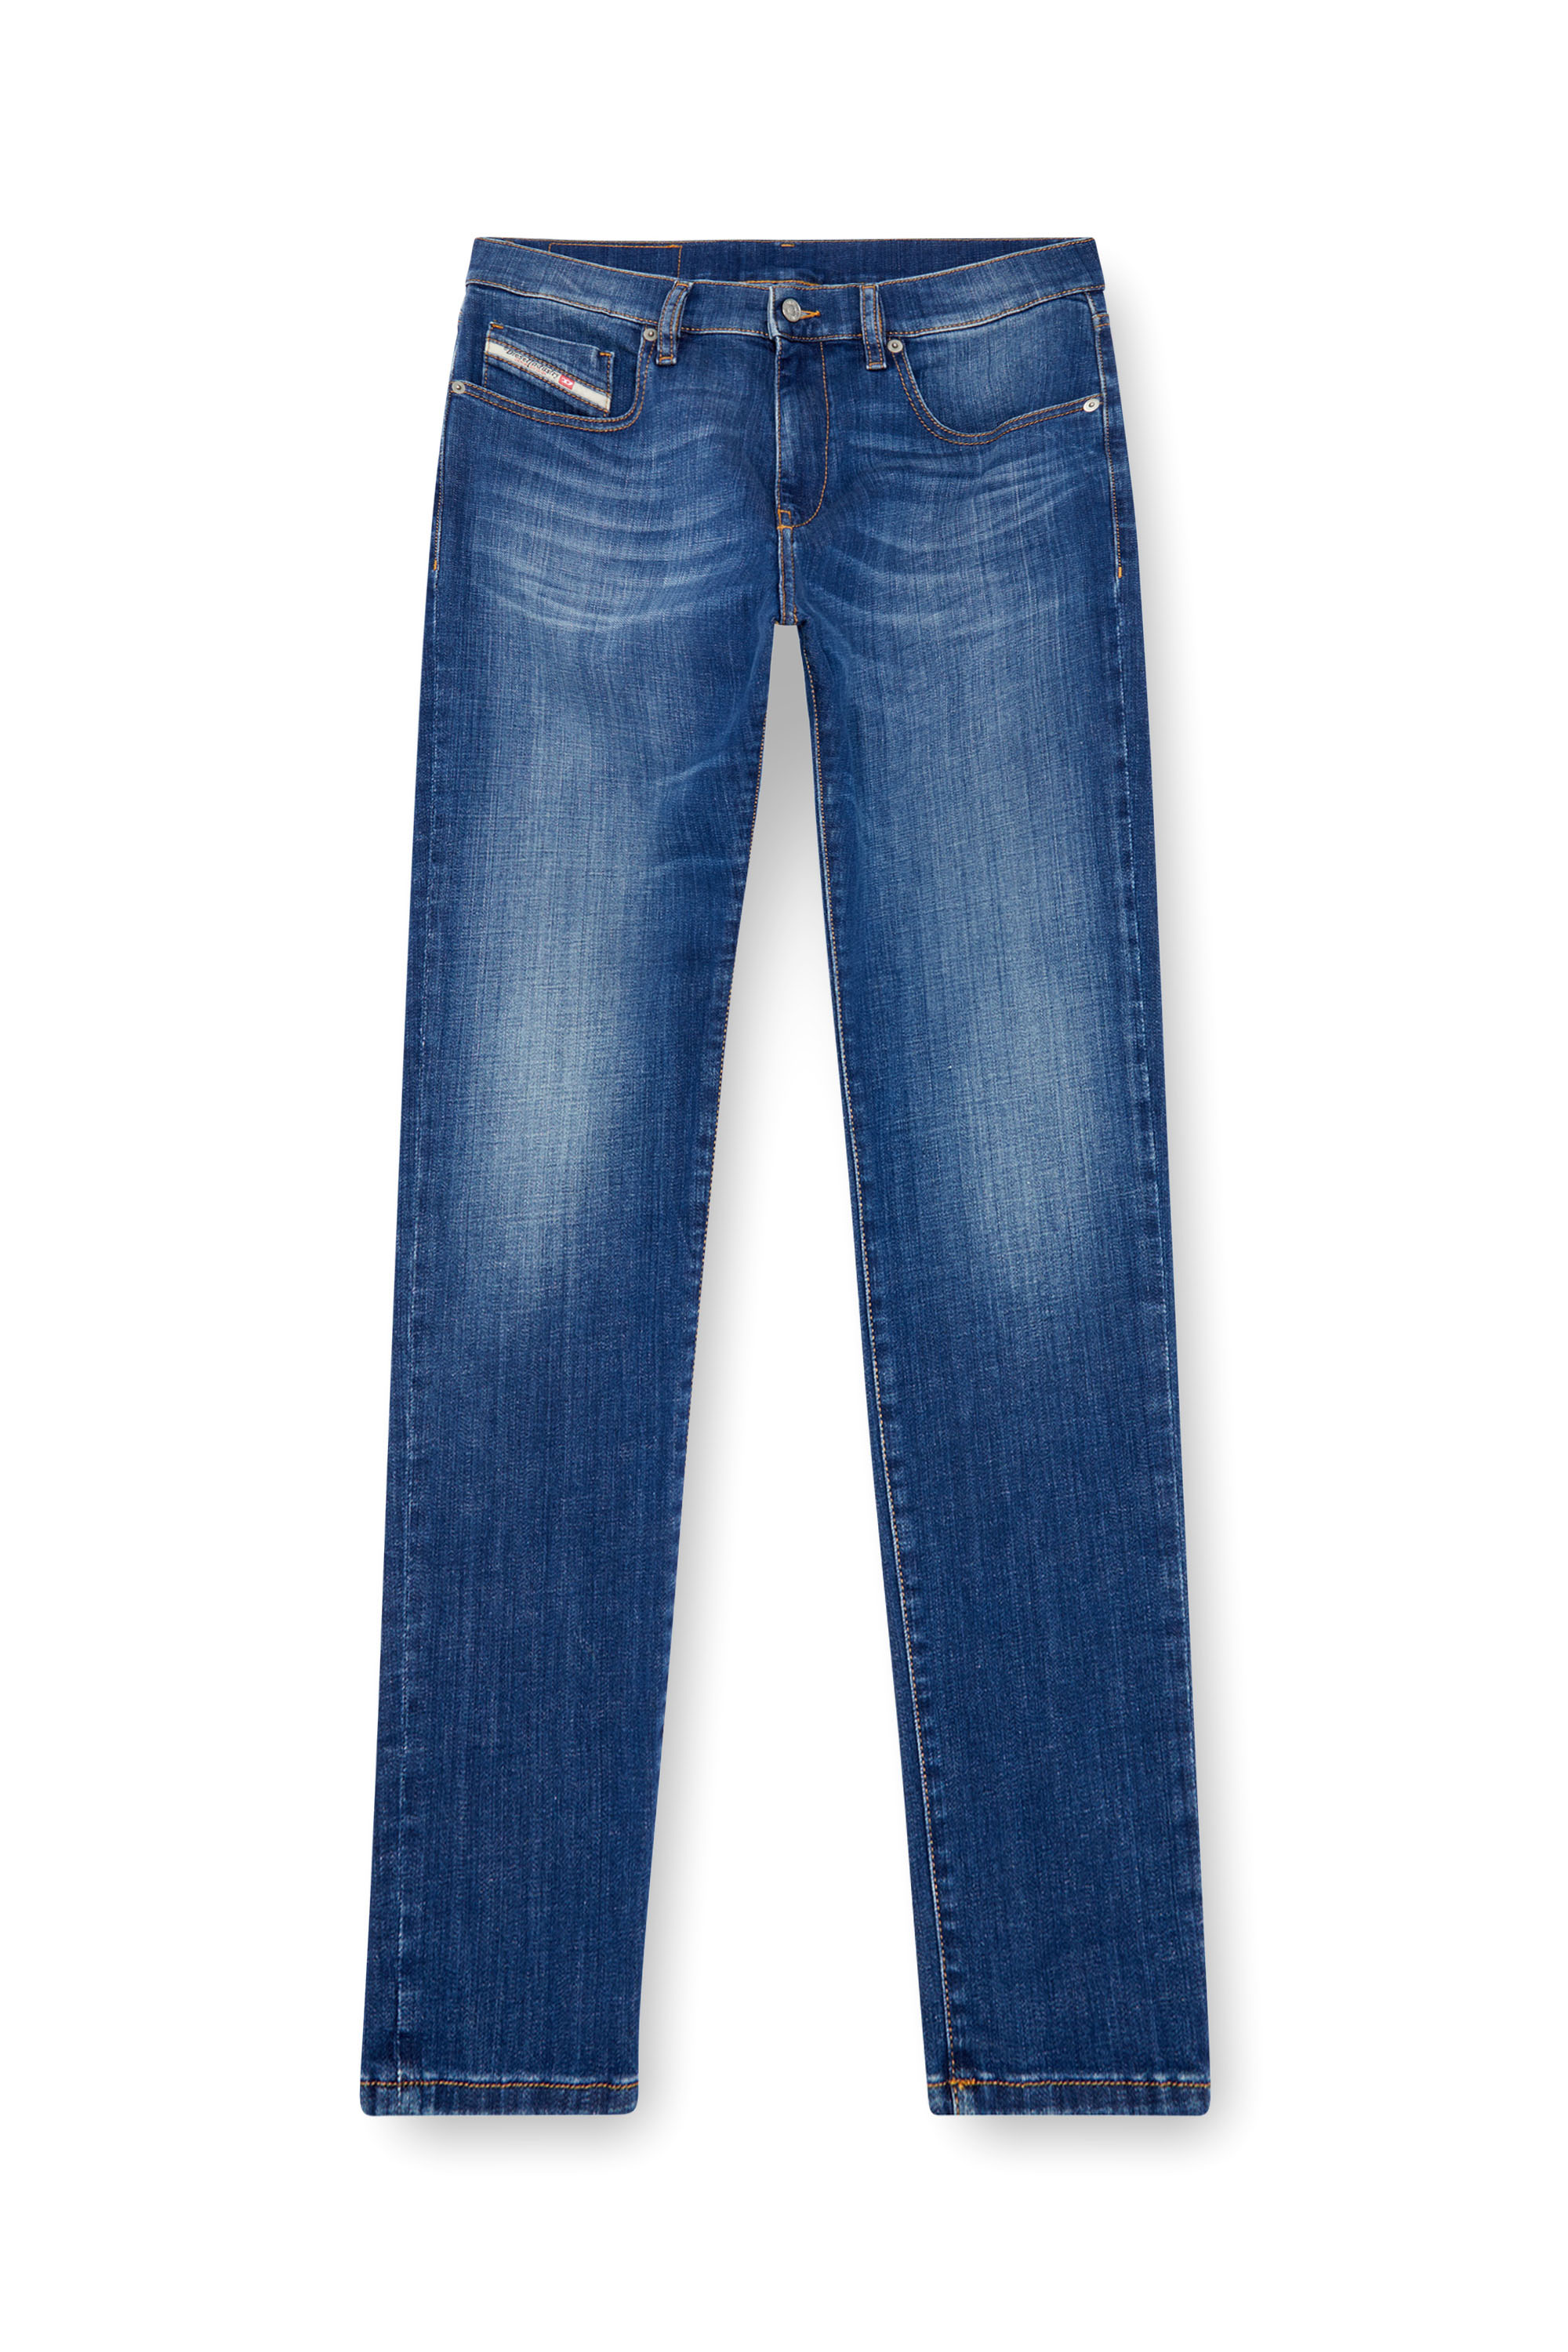 Diesel - Slim Jeans 2019 D-Strukt 09K04, Hombre Slim Jeans - 2019 D-Strukt in Azul marino - Image 5